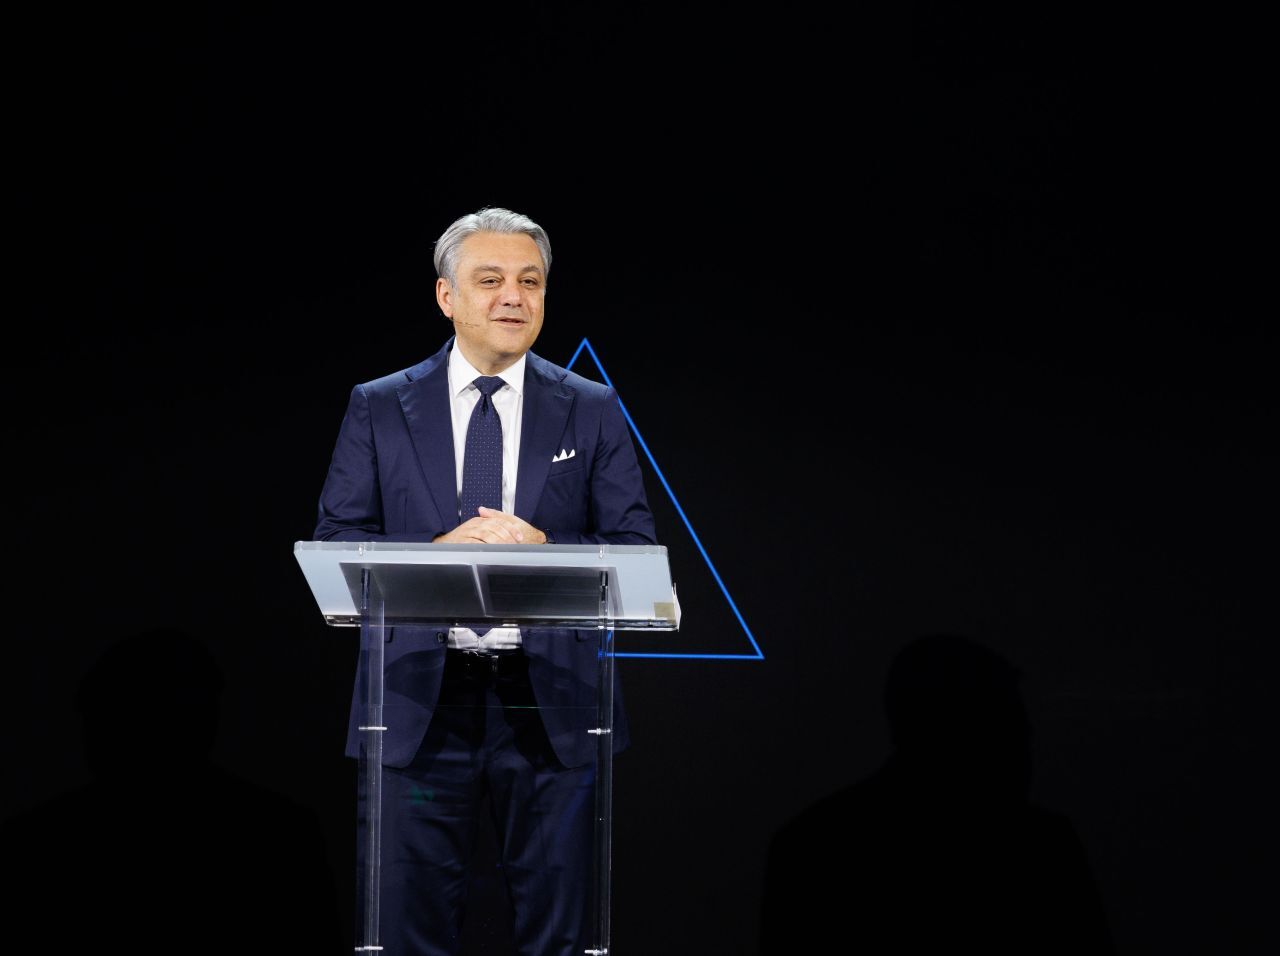 Luca De Meo, Chef von Renault und zugleich Präsident des europäischen Autoindustrieverbandes Acea, fordert mehr Ladesäulen und die V2G-Technologie.